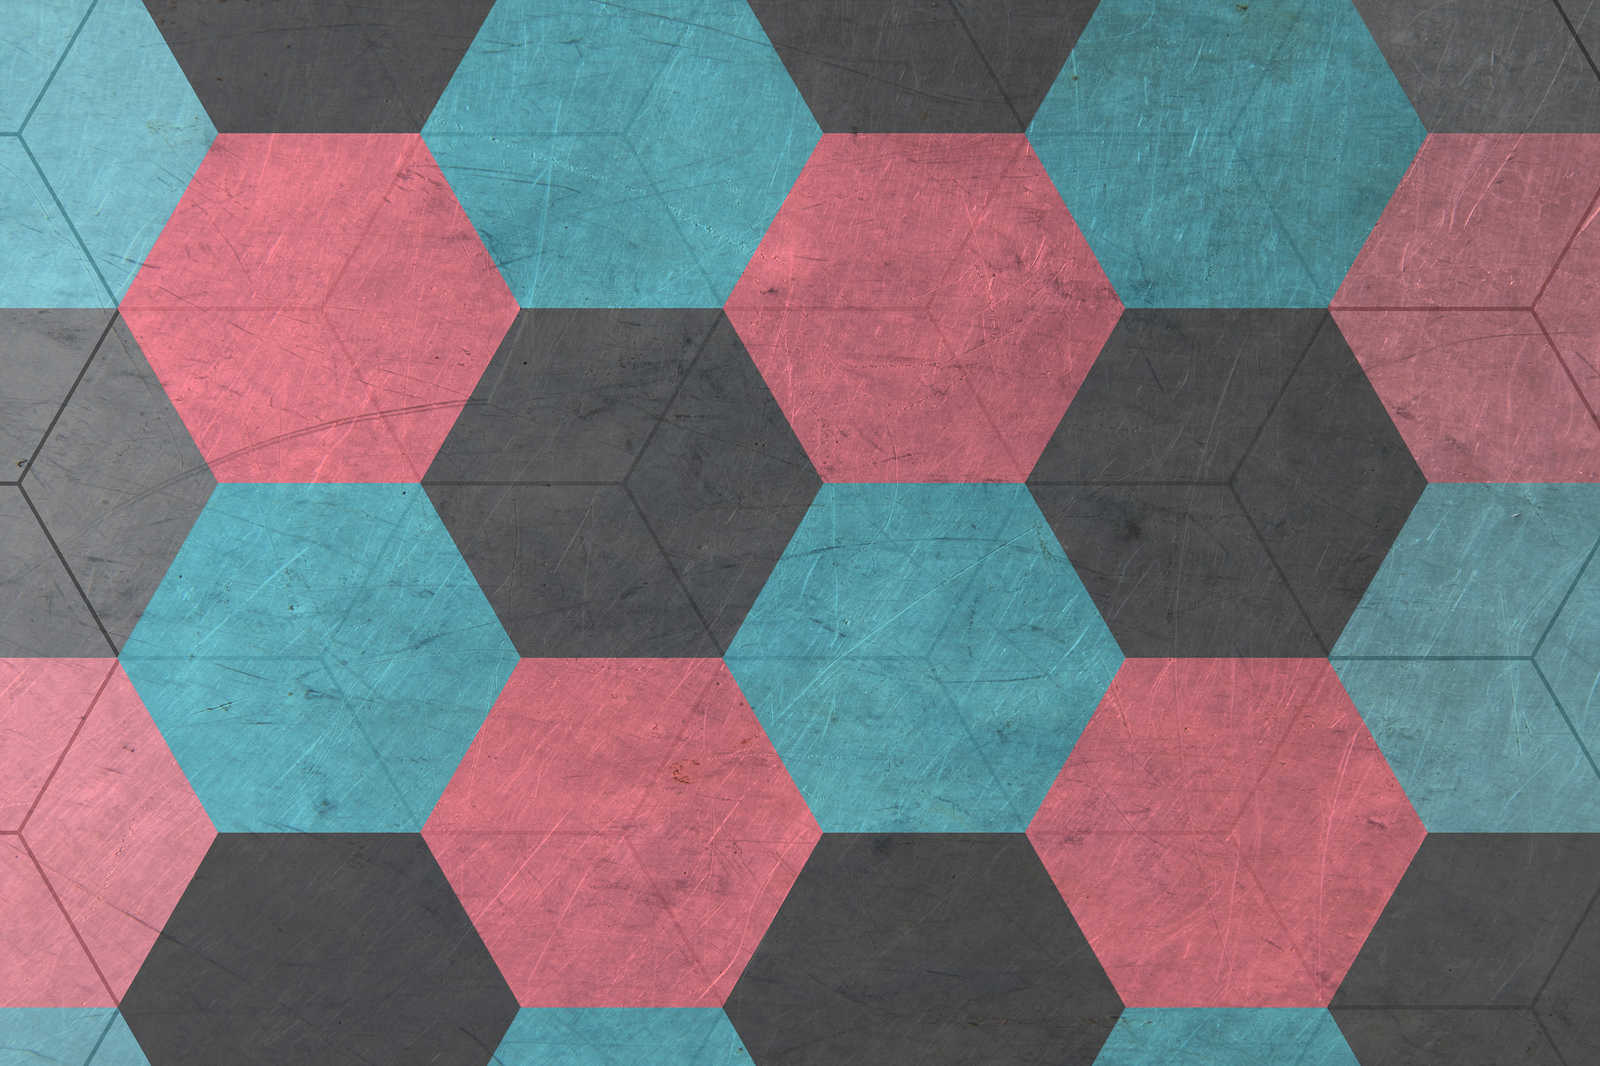             Lienzo de azulejos hexagonales de aspecto vintage - 0,90 m x 0,60 m
        